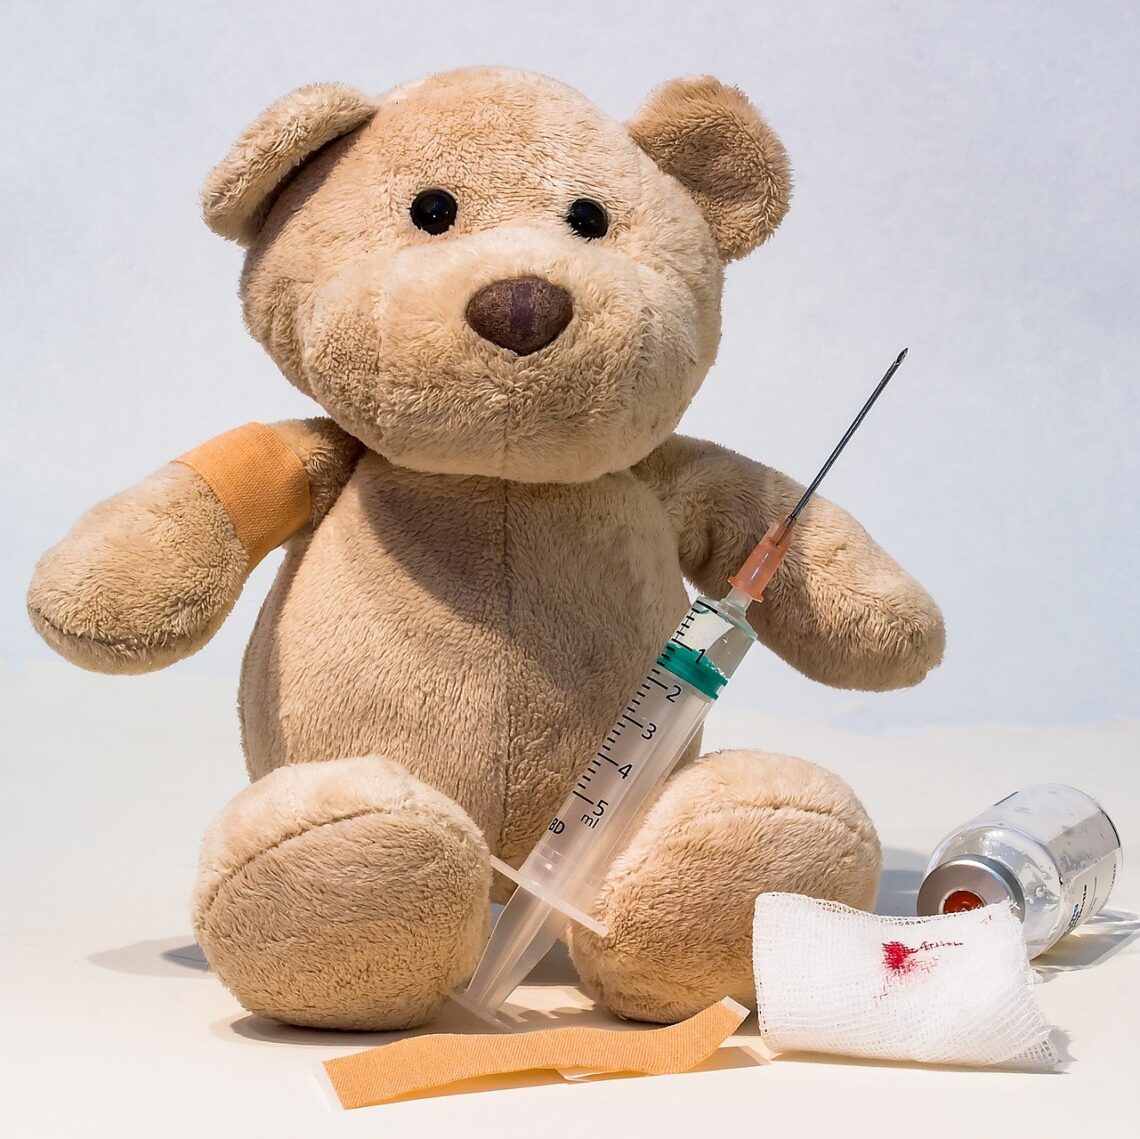 Teddybear mit einer Impfung